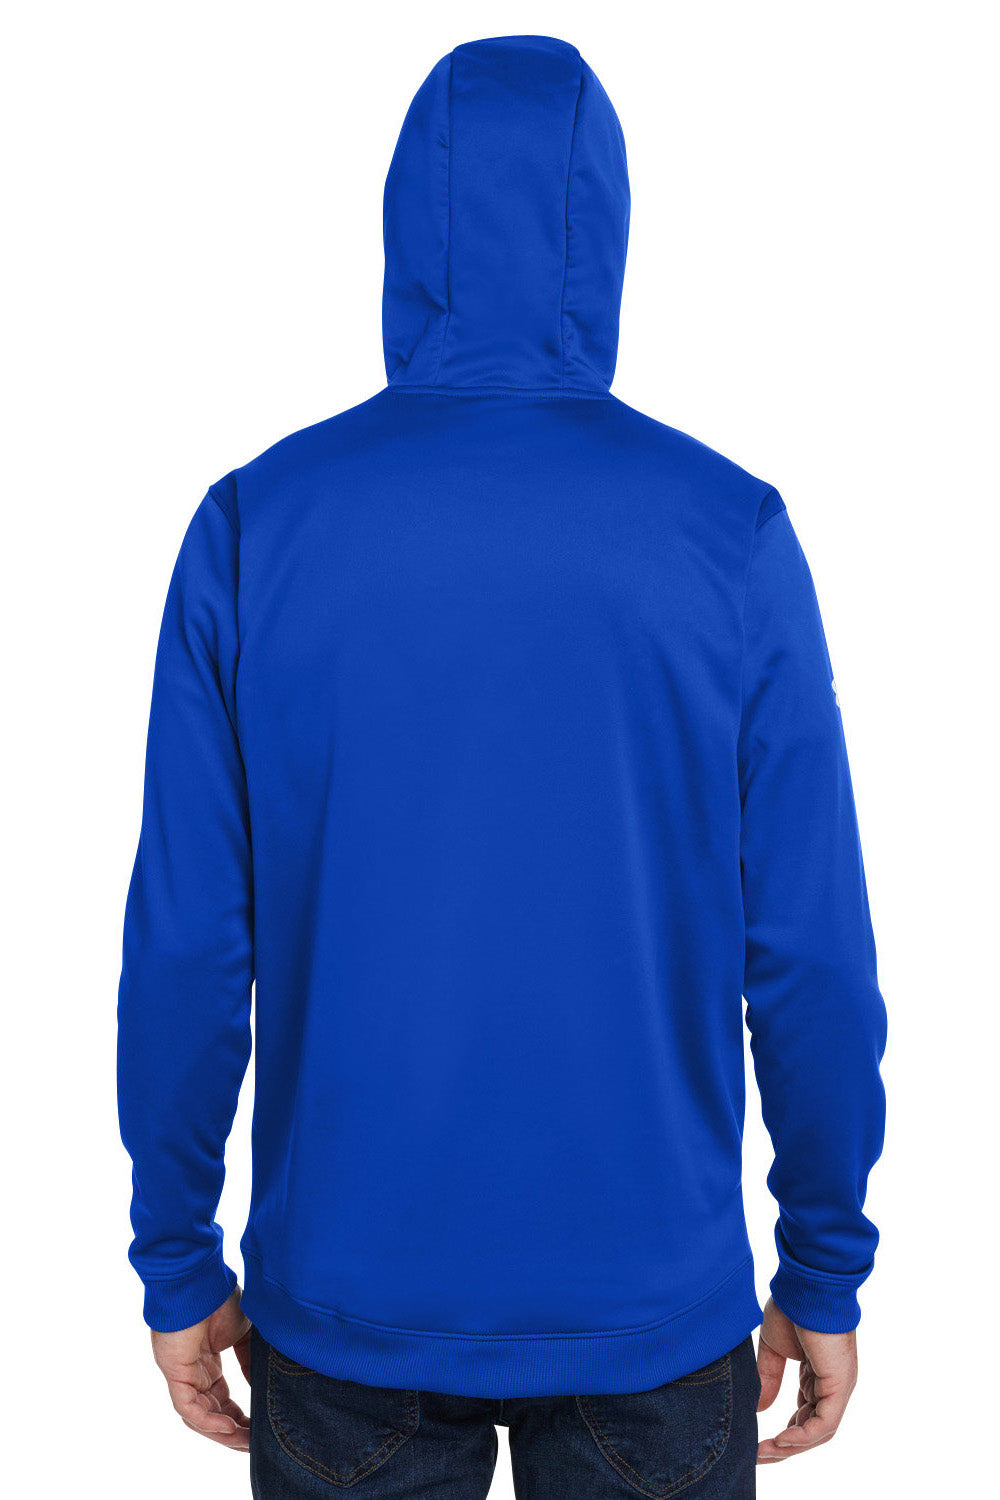 Under Armour 1370379 Mens Storm Armourfleece Water Resistant Hooded Sweatshirt Hoodie Royal Blue Model Back